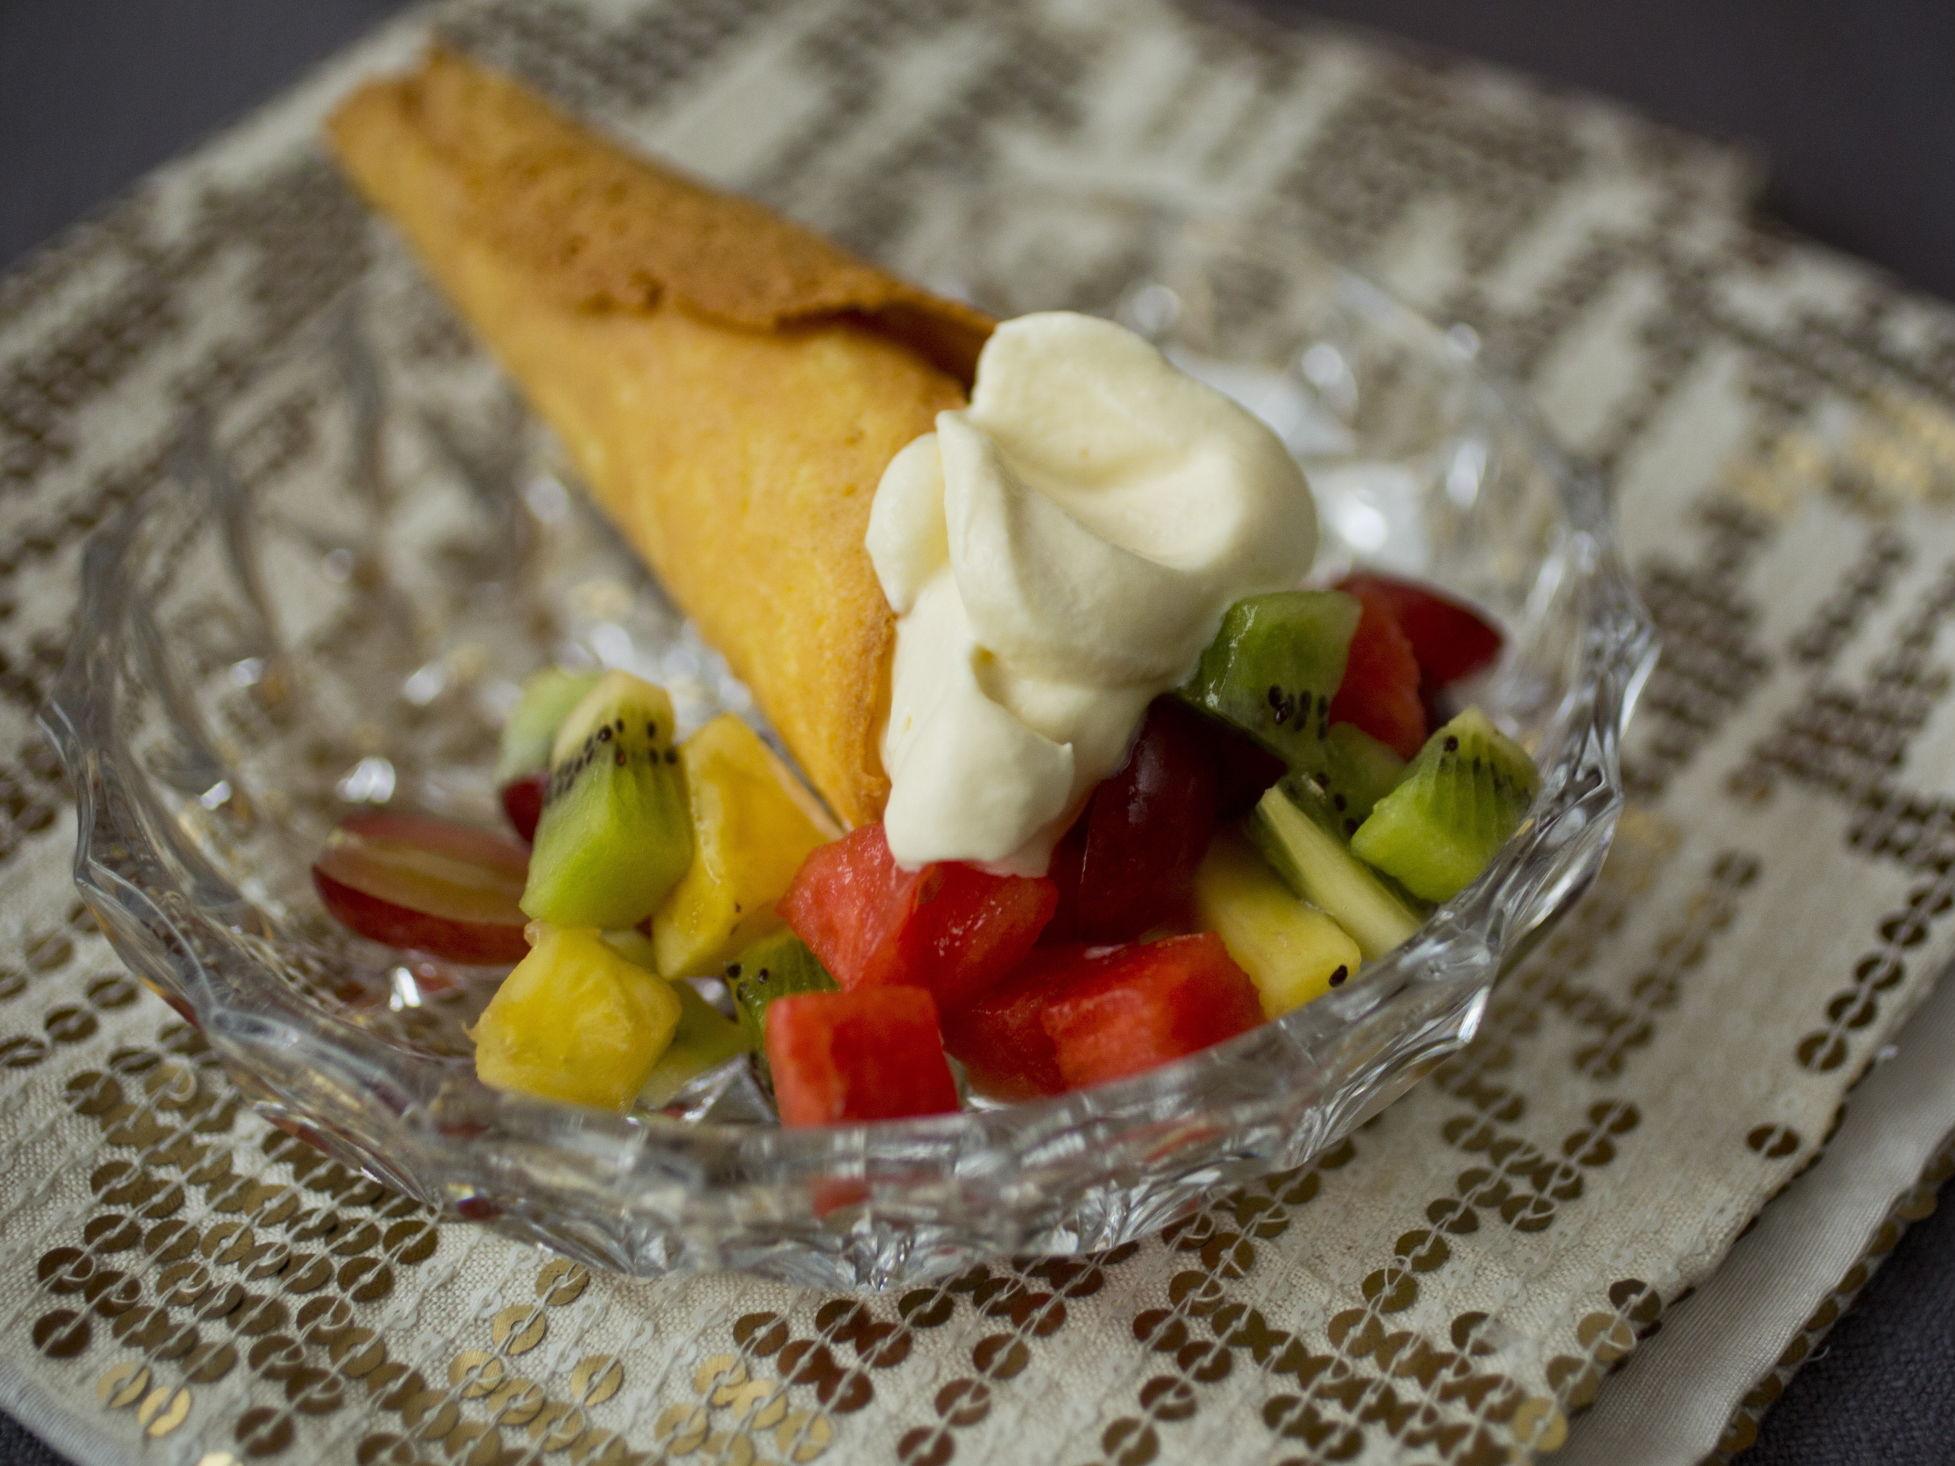 NYDELIG: Gjør fruktsalaten til en skikkelig dessert ved å servere den med saus, kjeks, eller kanskje kake. Foto: Sara Johannessen/VG